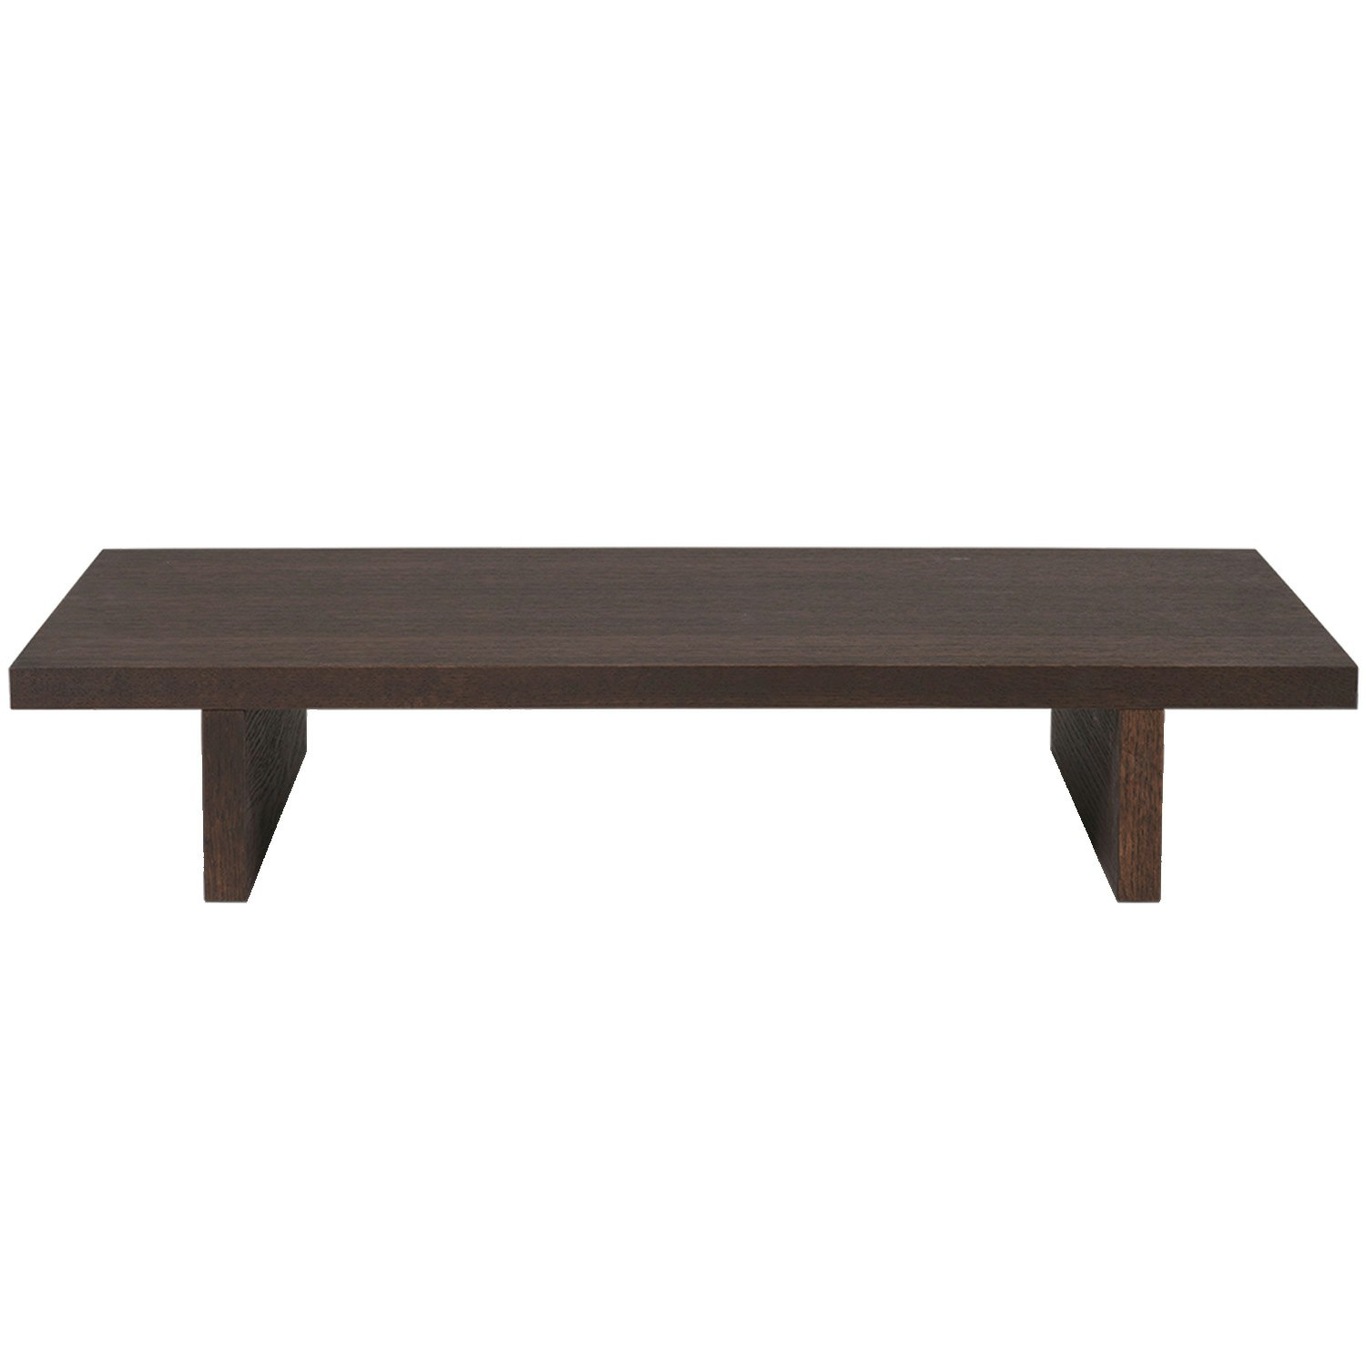 Kona Low Side Table 78 x 14x 47.5 cm, Dark Stained